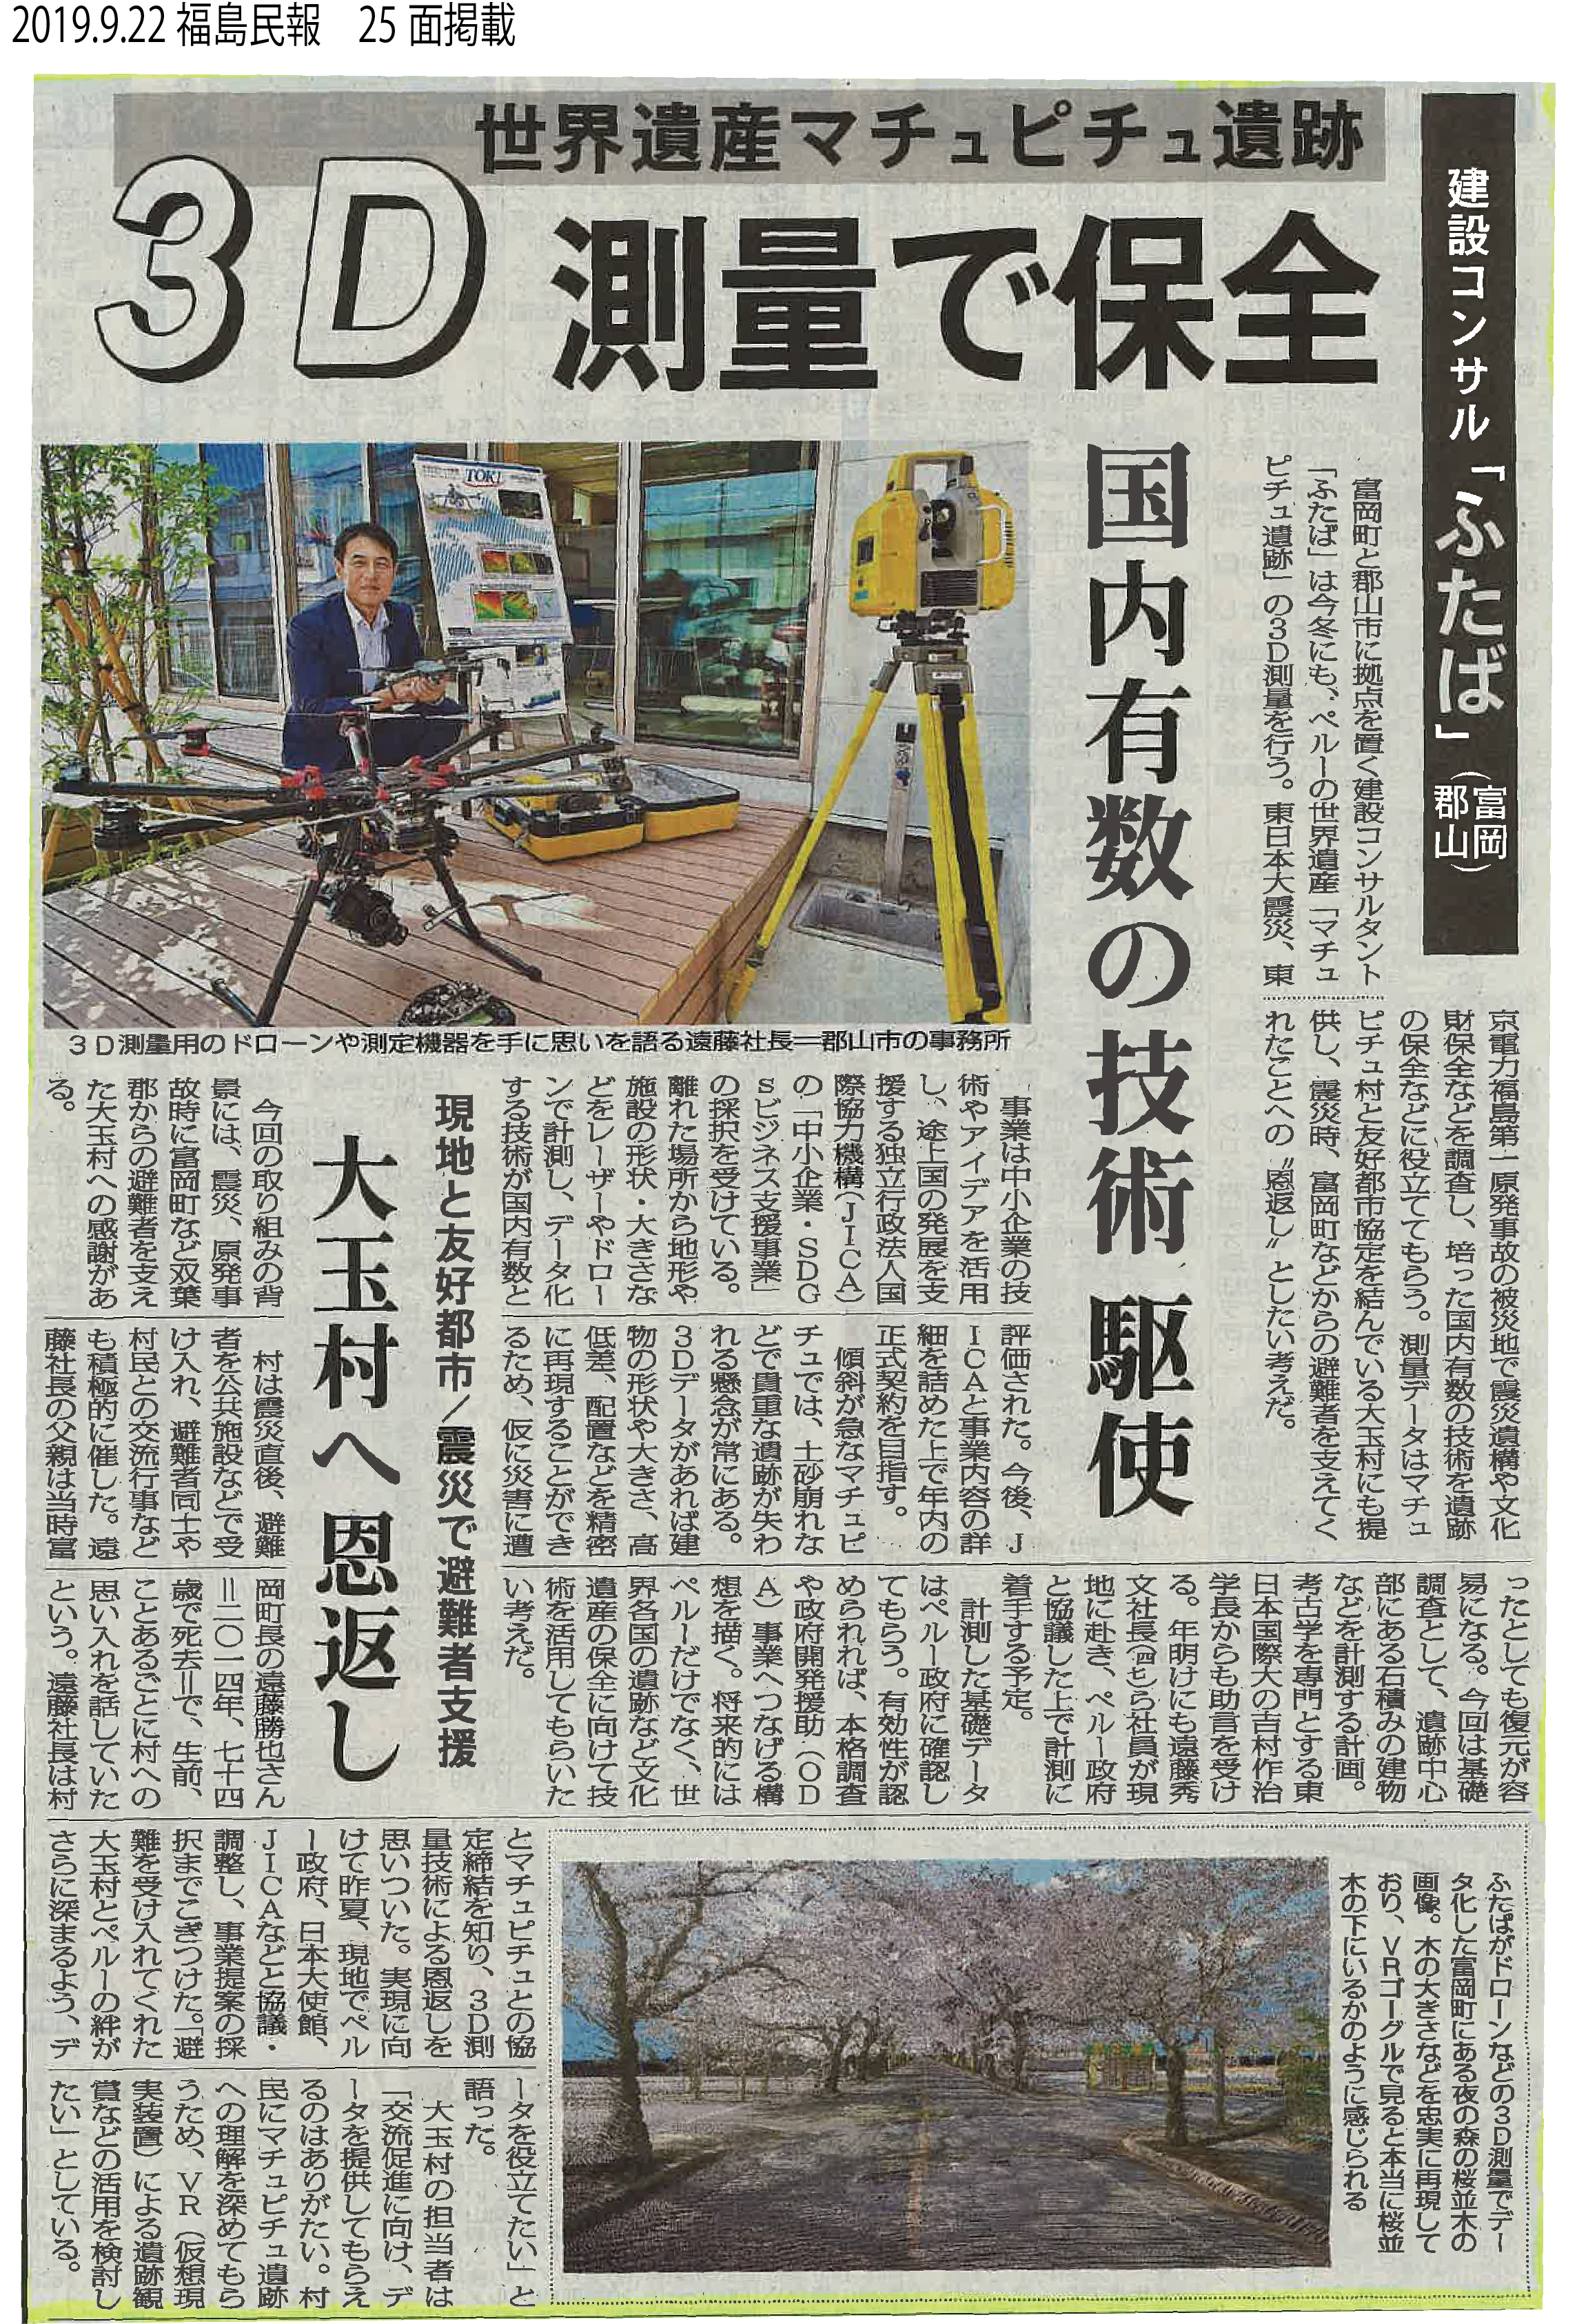 『マチュピチュ遺跡調査』の採択の記事が福島民報で掲載されました。の画像